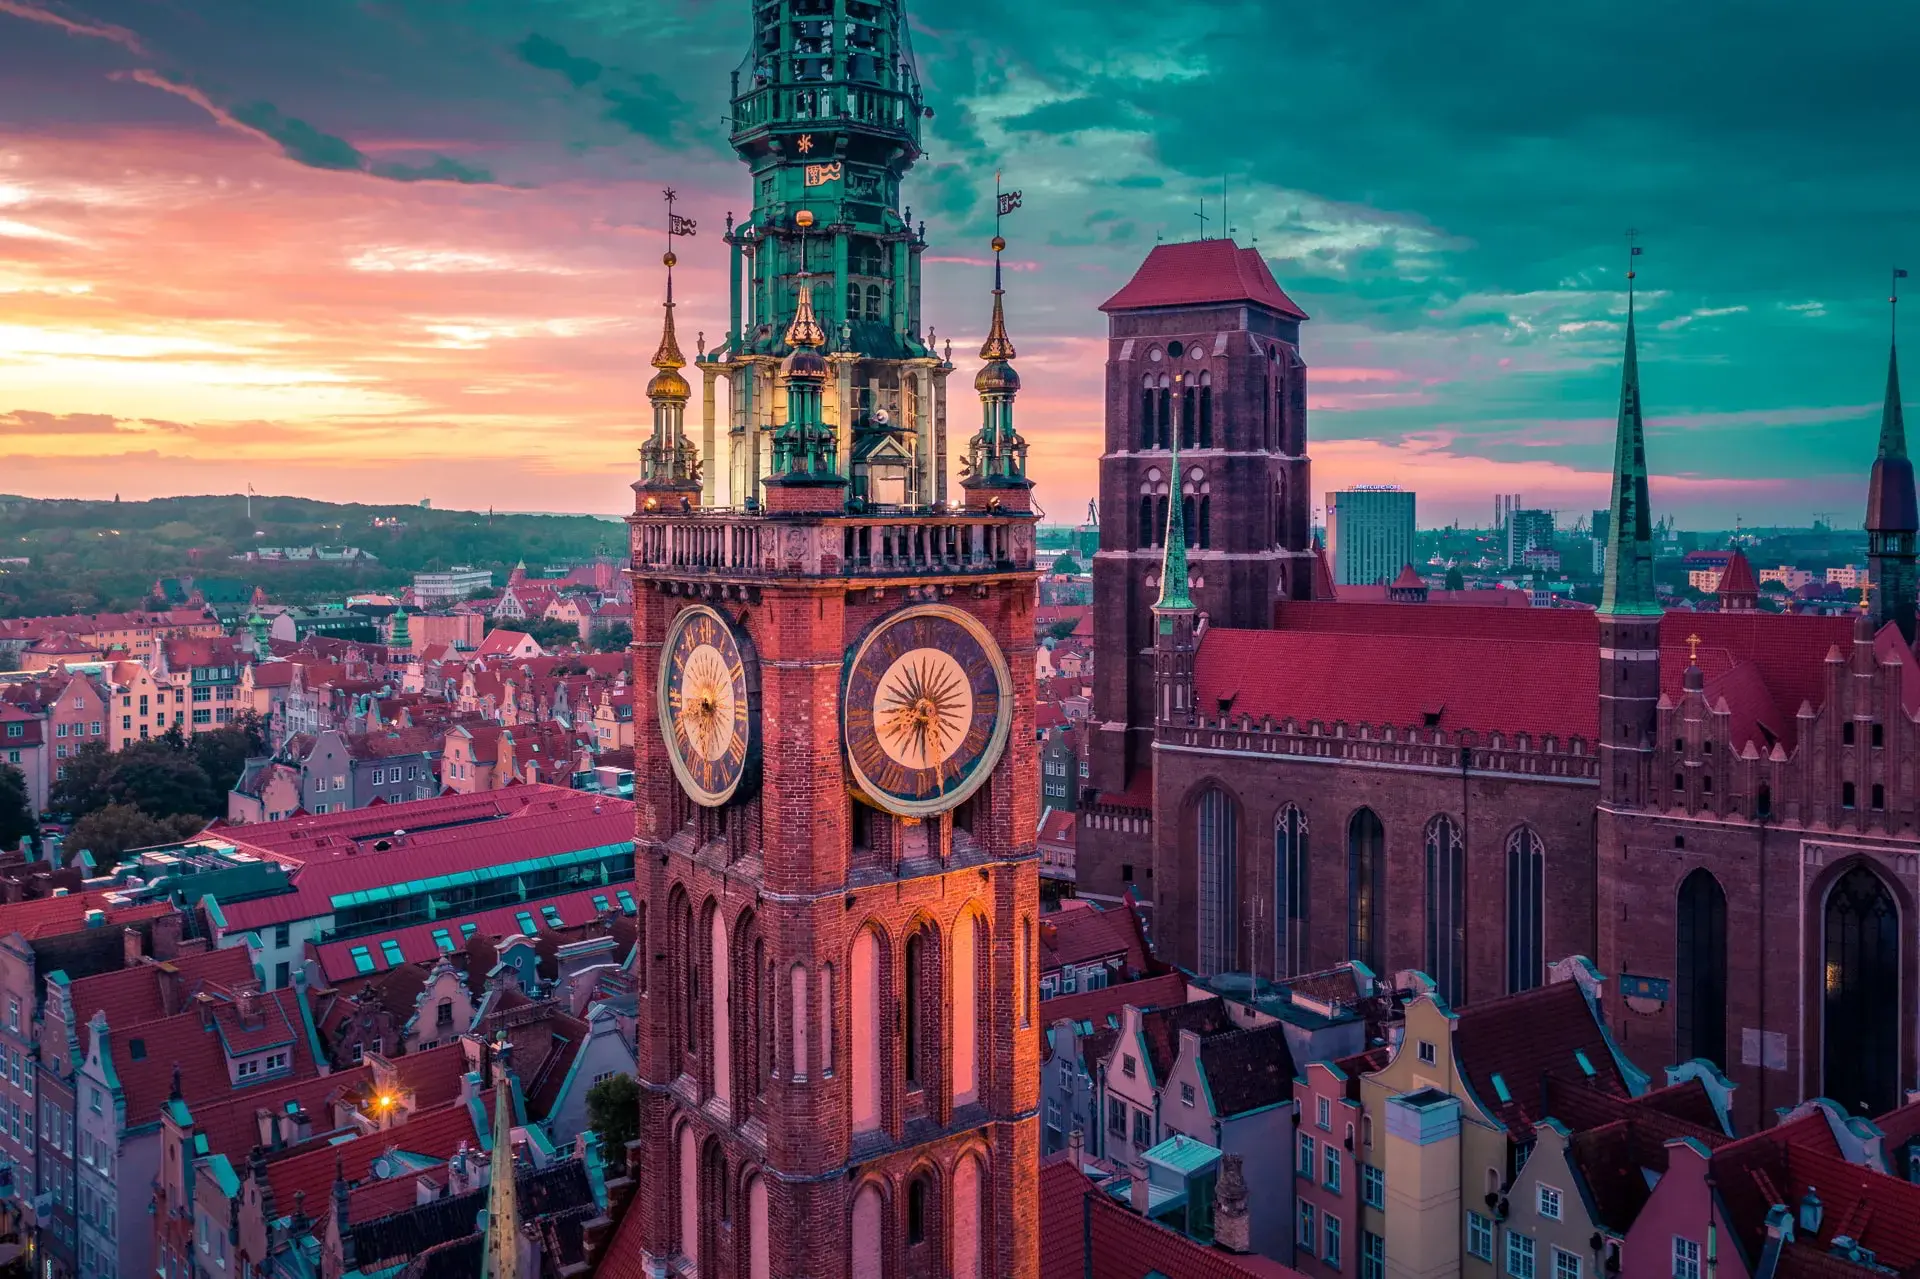 Kościół Mariacki w Gdańsku: Arcydzieło gotyckiej architektury